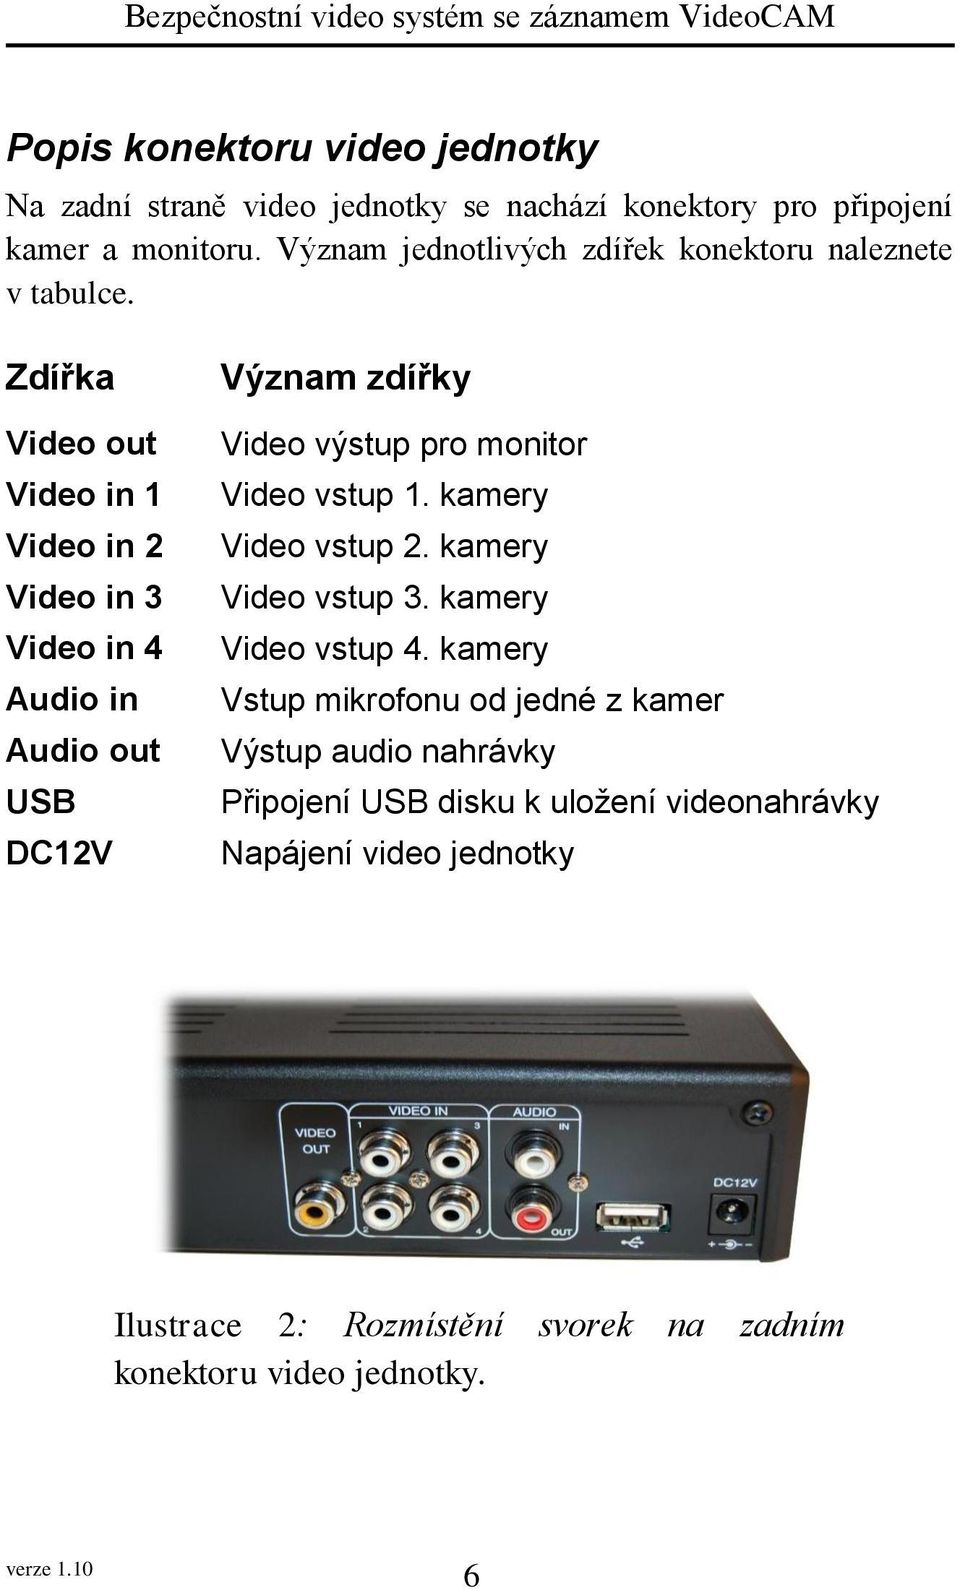 Zdířka Video out Video in 1 Video in 2 Video in 3 Video in 4 Audio in Audio out USB DC12V Význam zdířky Video výstup pro monitor Video vstup 1.